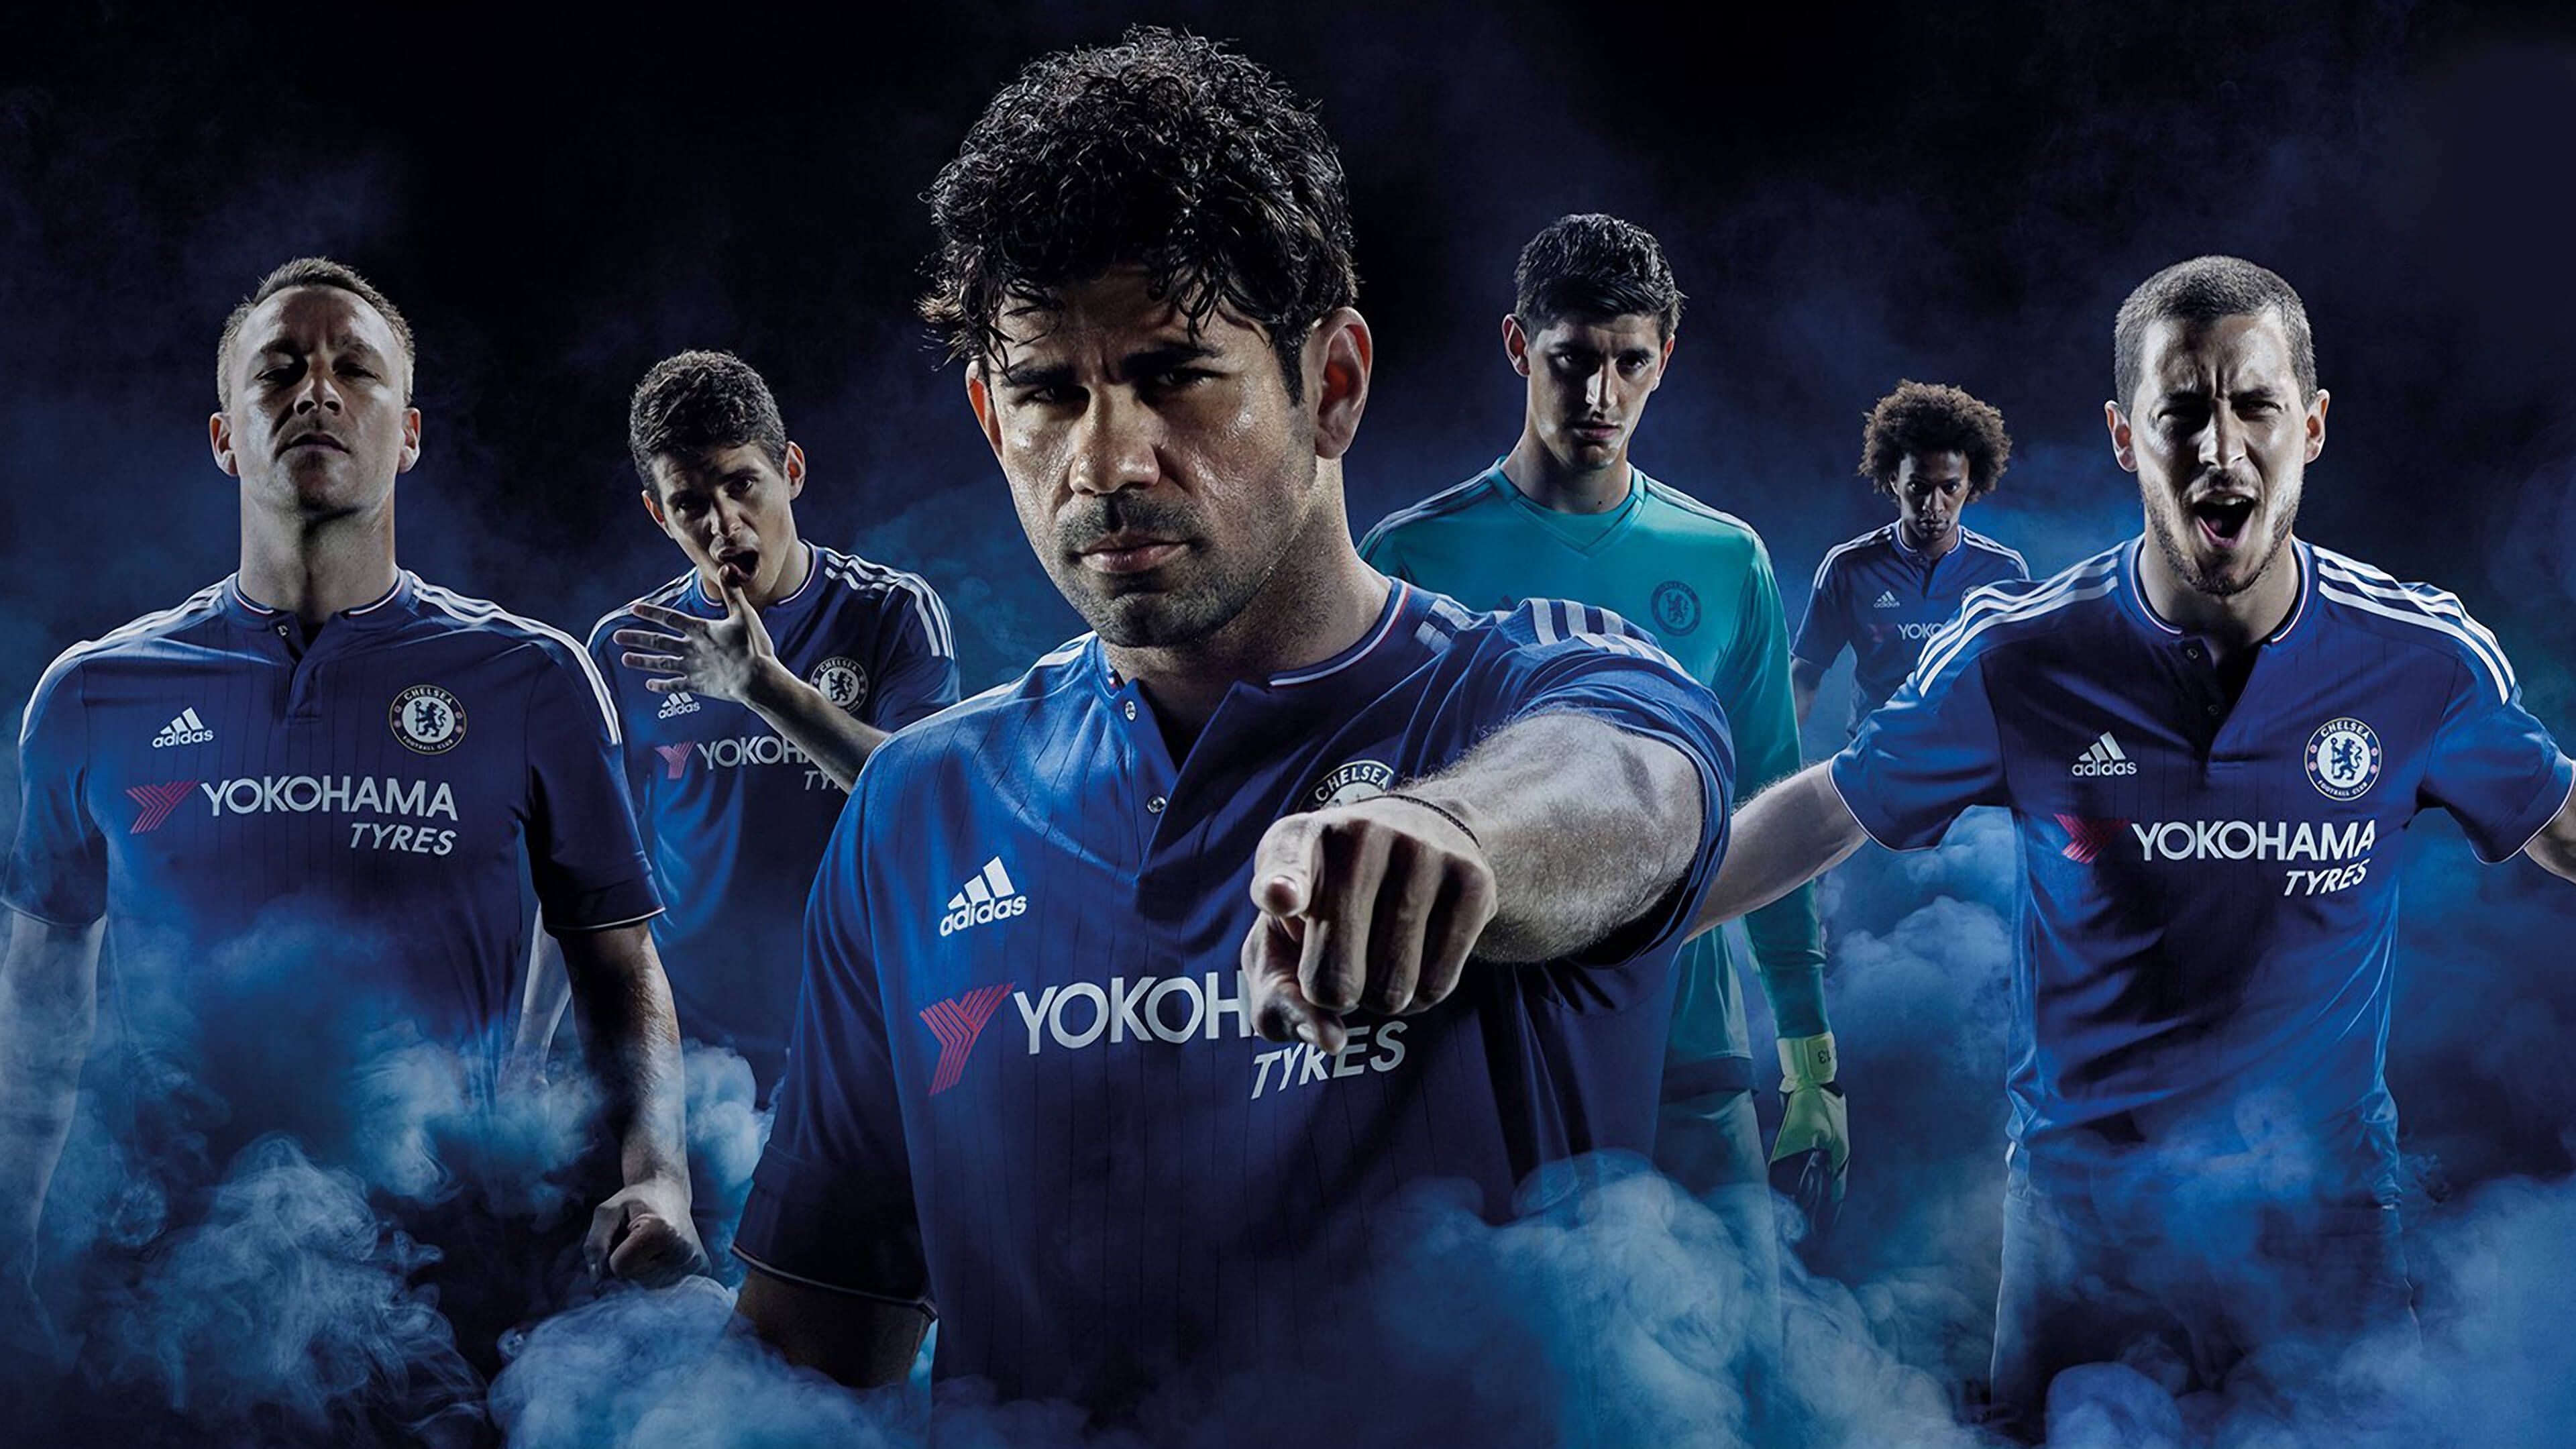 Chelsea FC 2015 2016 Adidas Home kit 4K Wallpaper